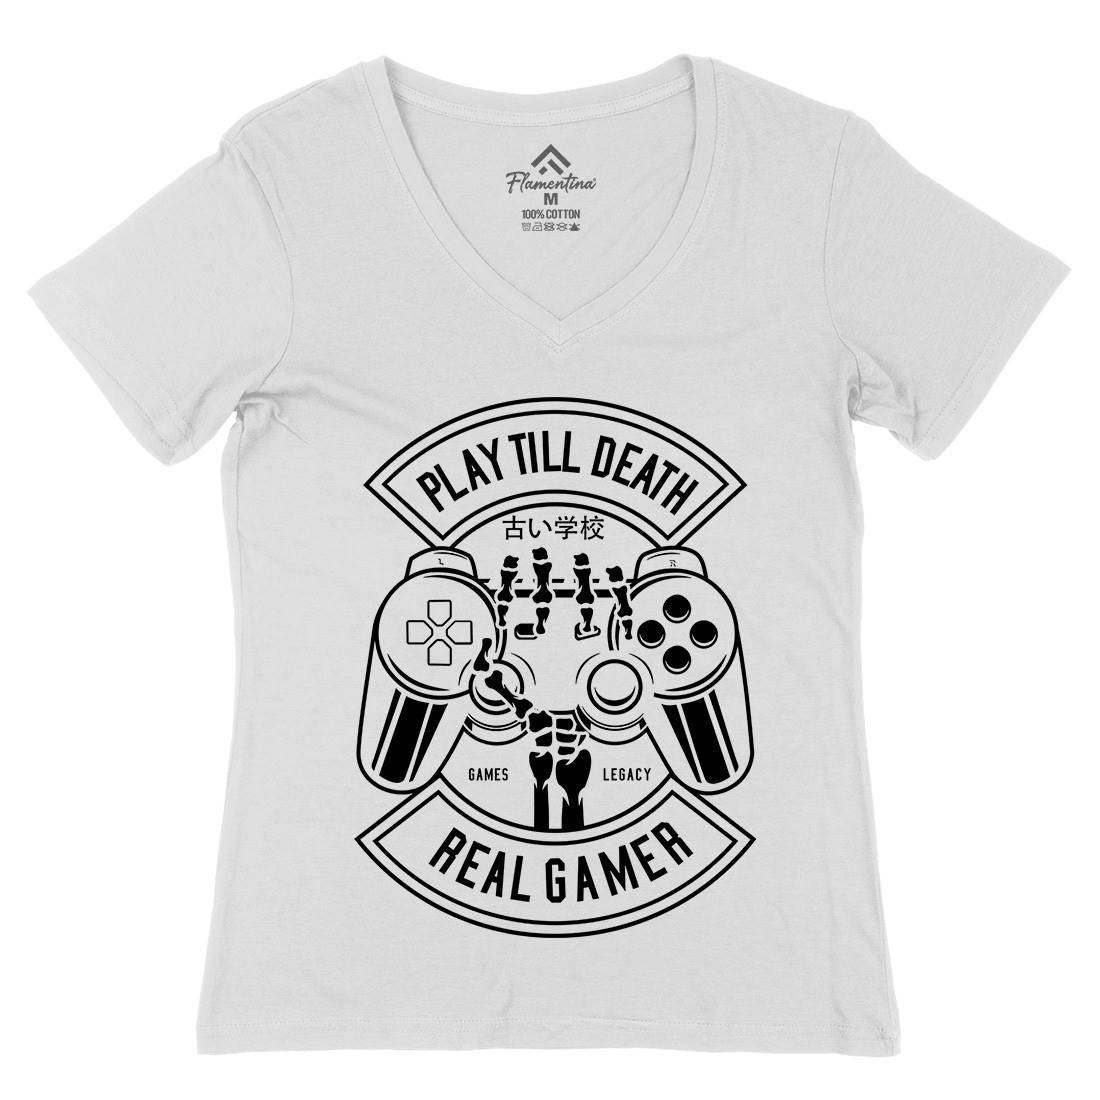 Play Till Death Womens Organic V-Neck T-Shirt Geek B603